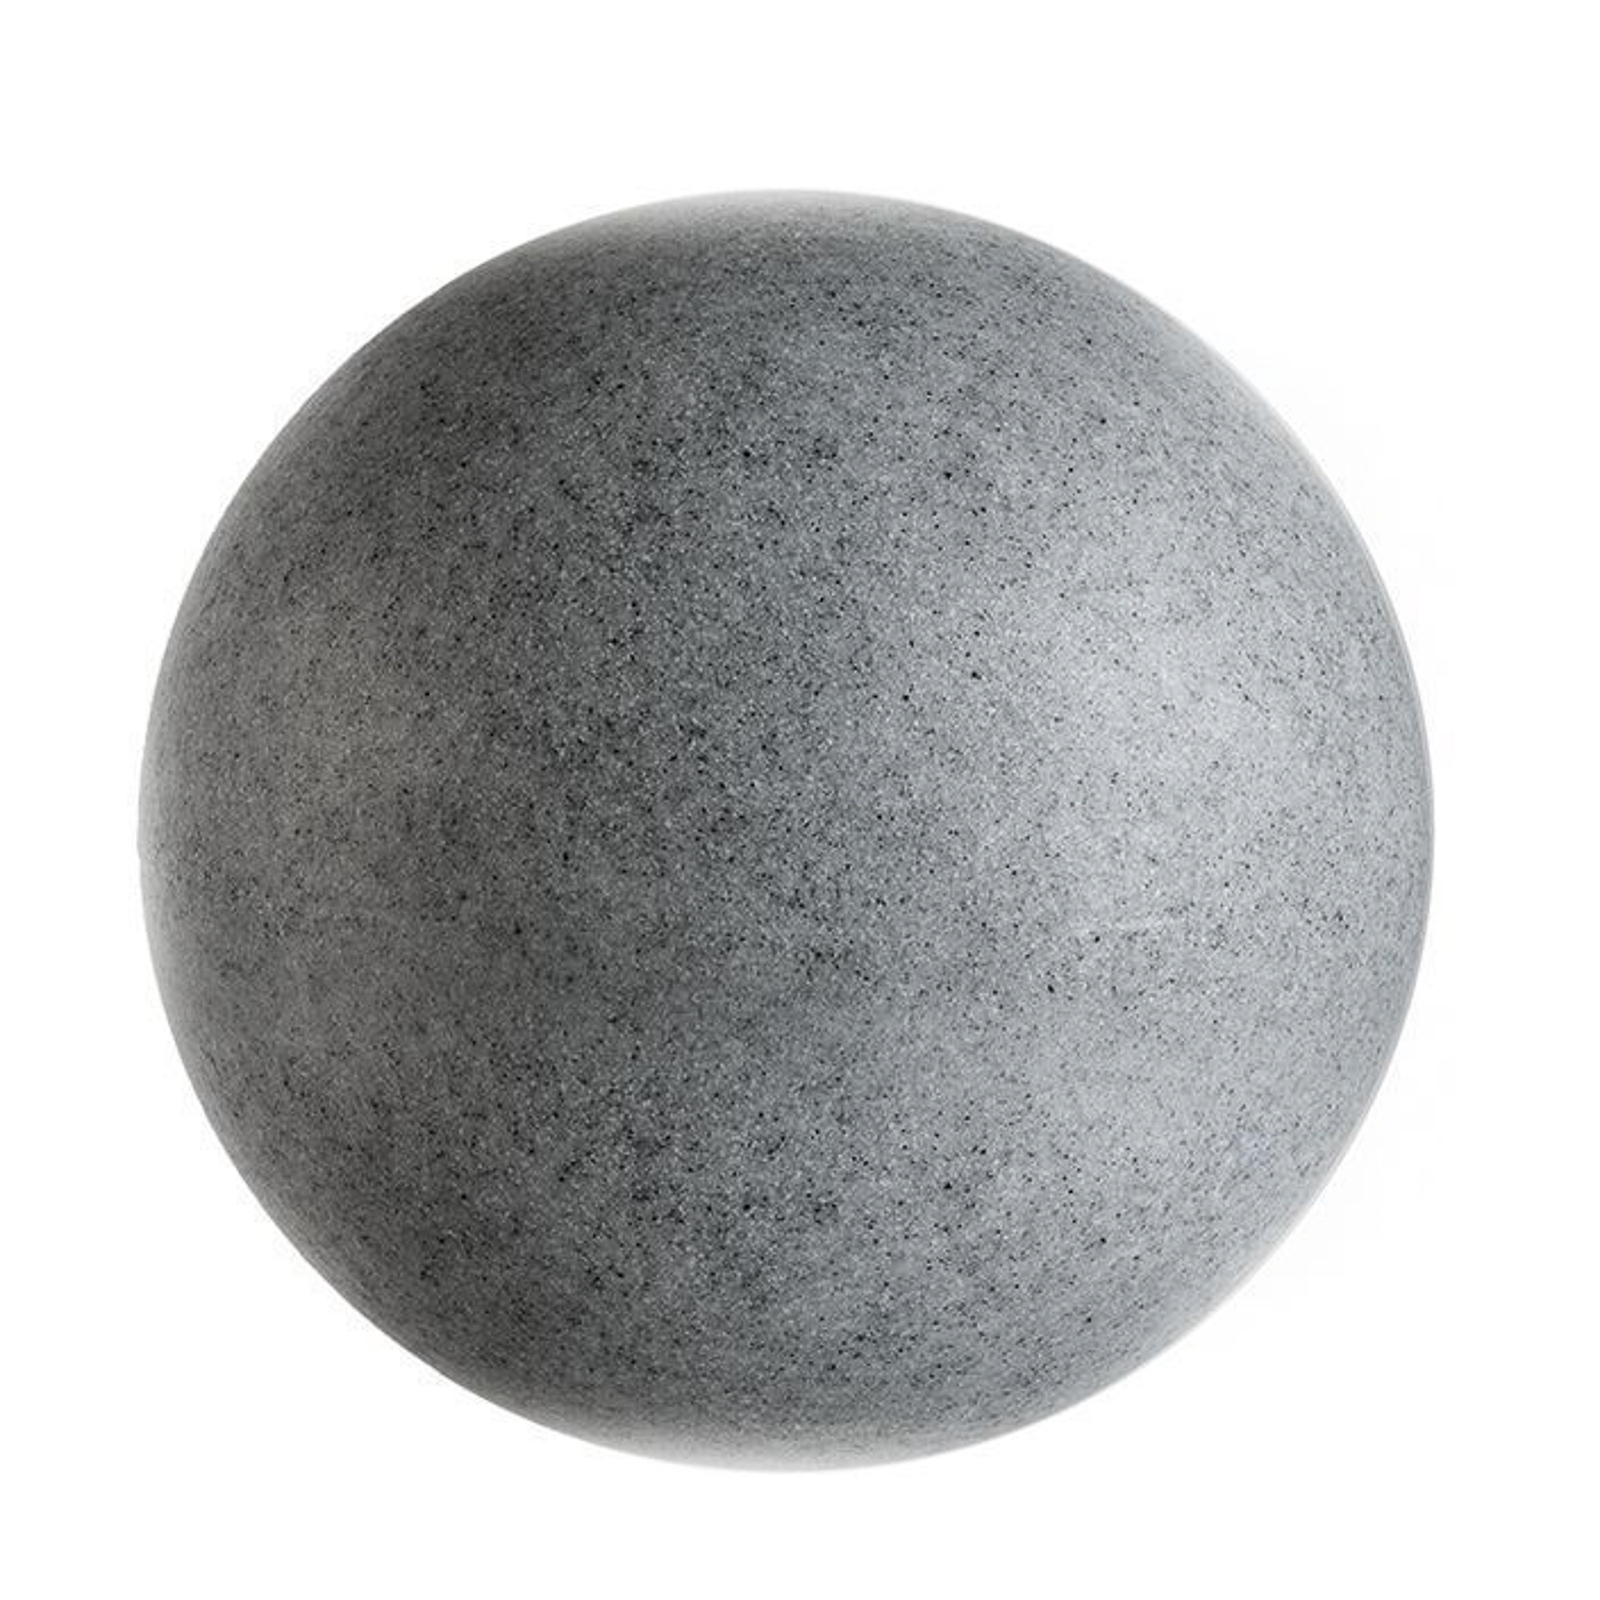 Lichtbol met grondspies, graniet, Ø 25cm